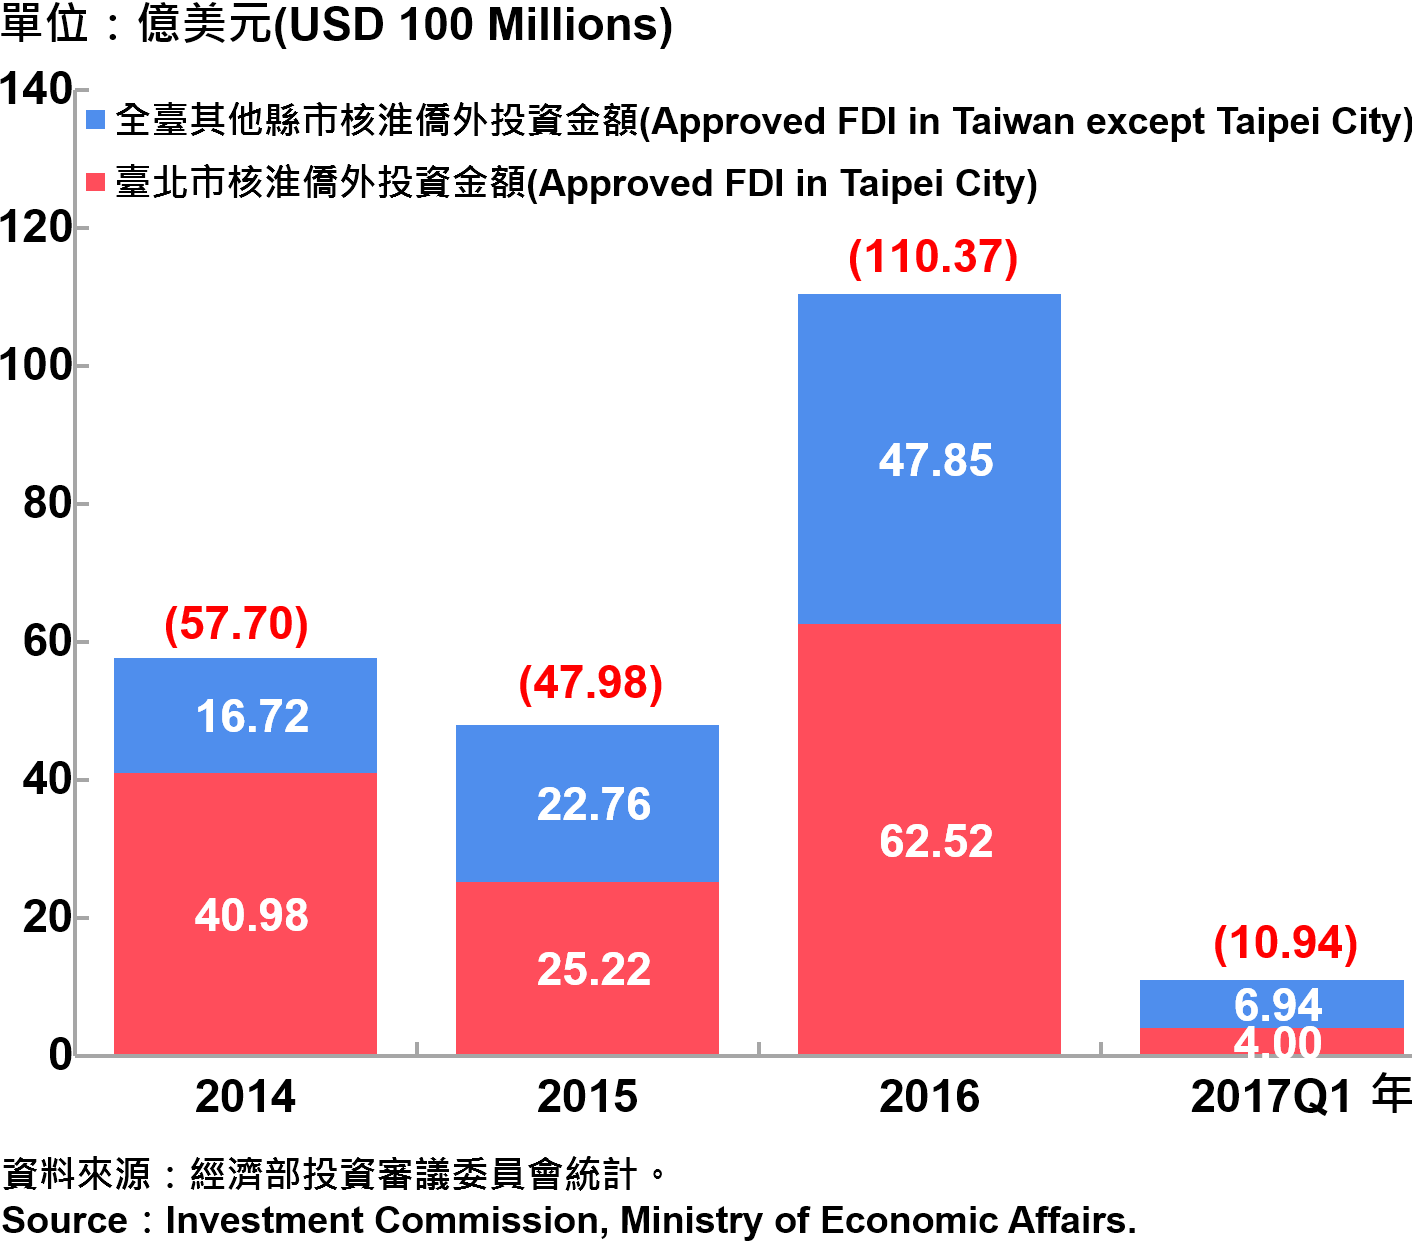 圖12、臺北市與全臺僑外投資金額—2017Q1 Foreign Direct Investment （FDI） in Taipei and Taiwan Area—2017Q1